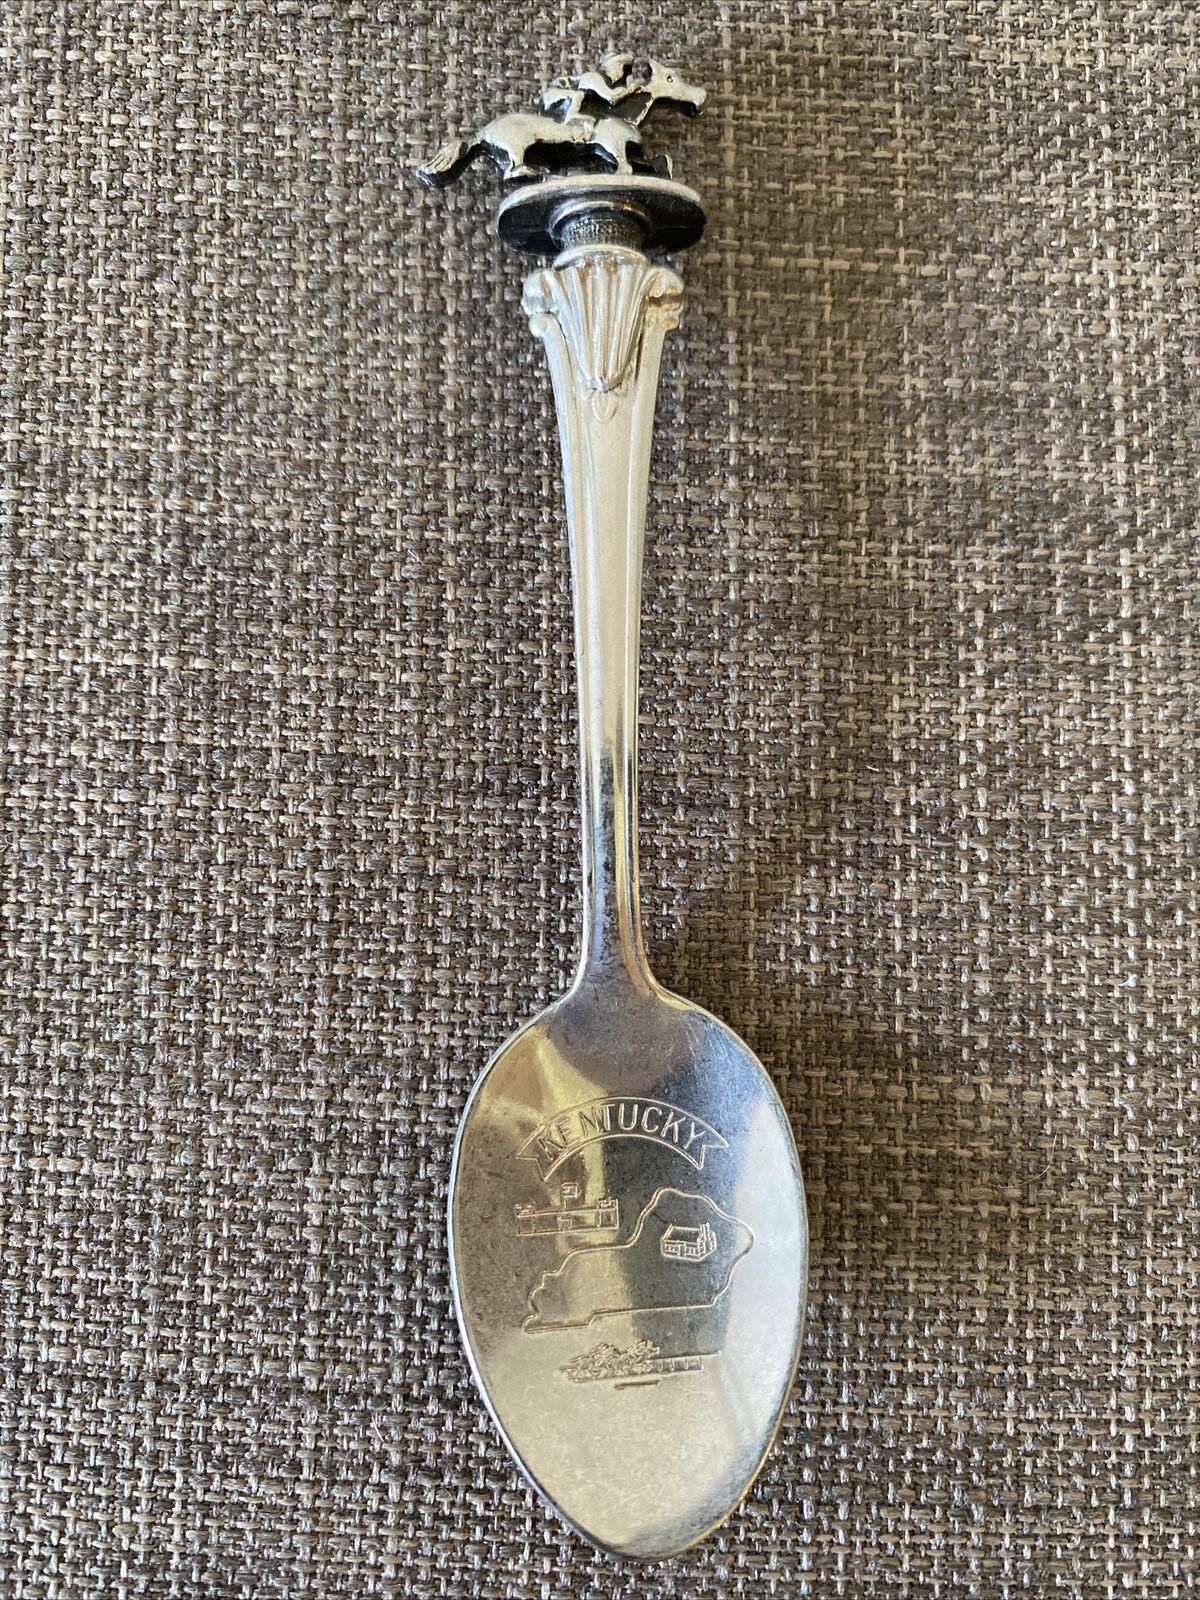 Vintage Kentucky Collector’s Souvenir Spoon